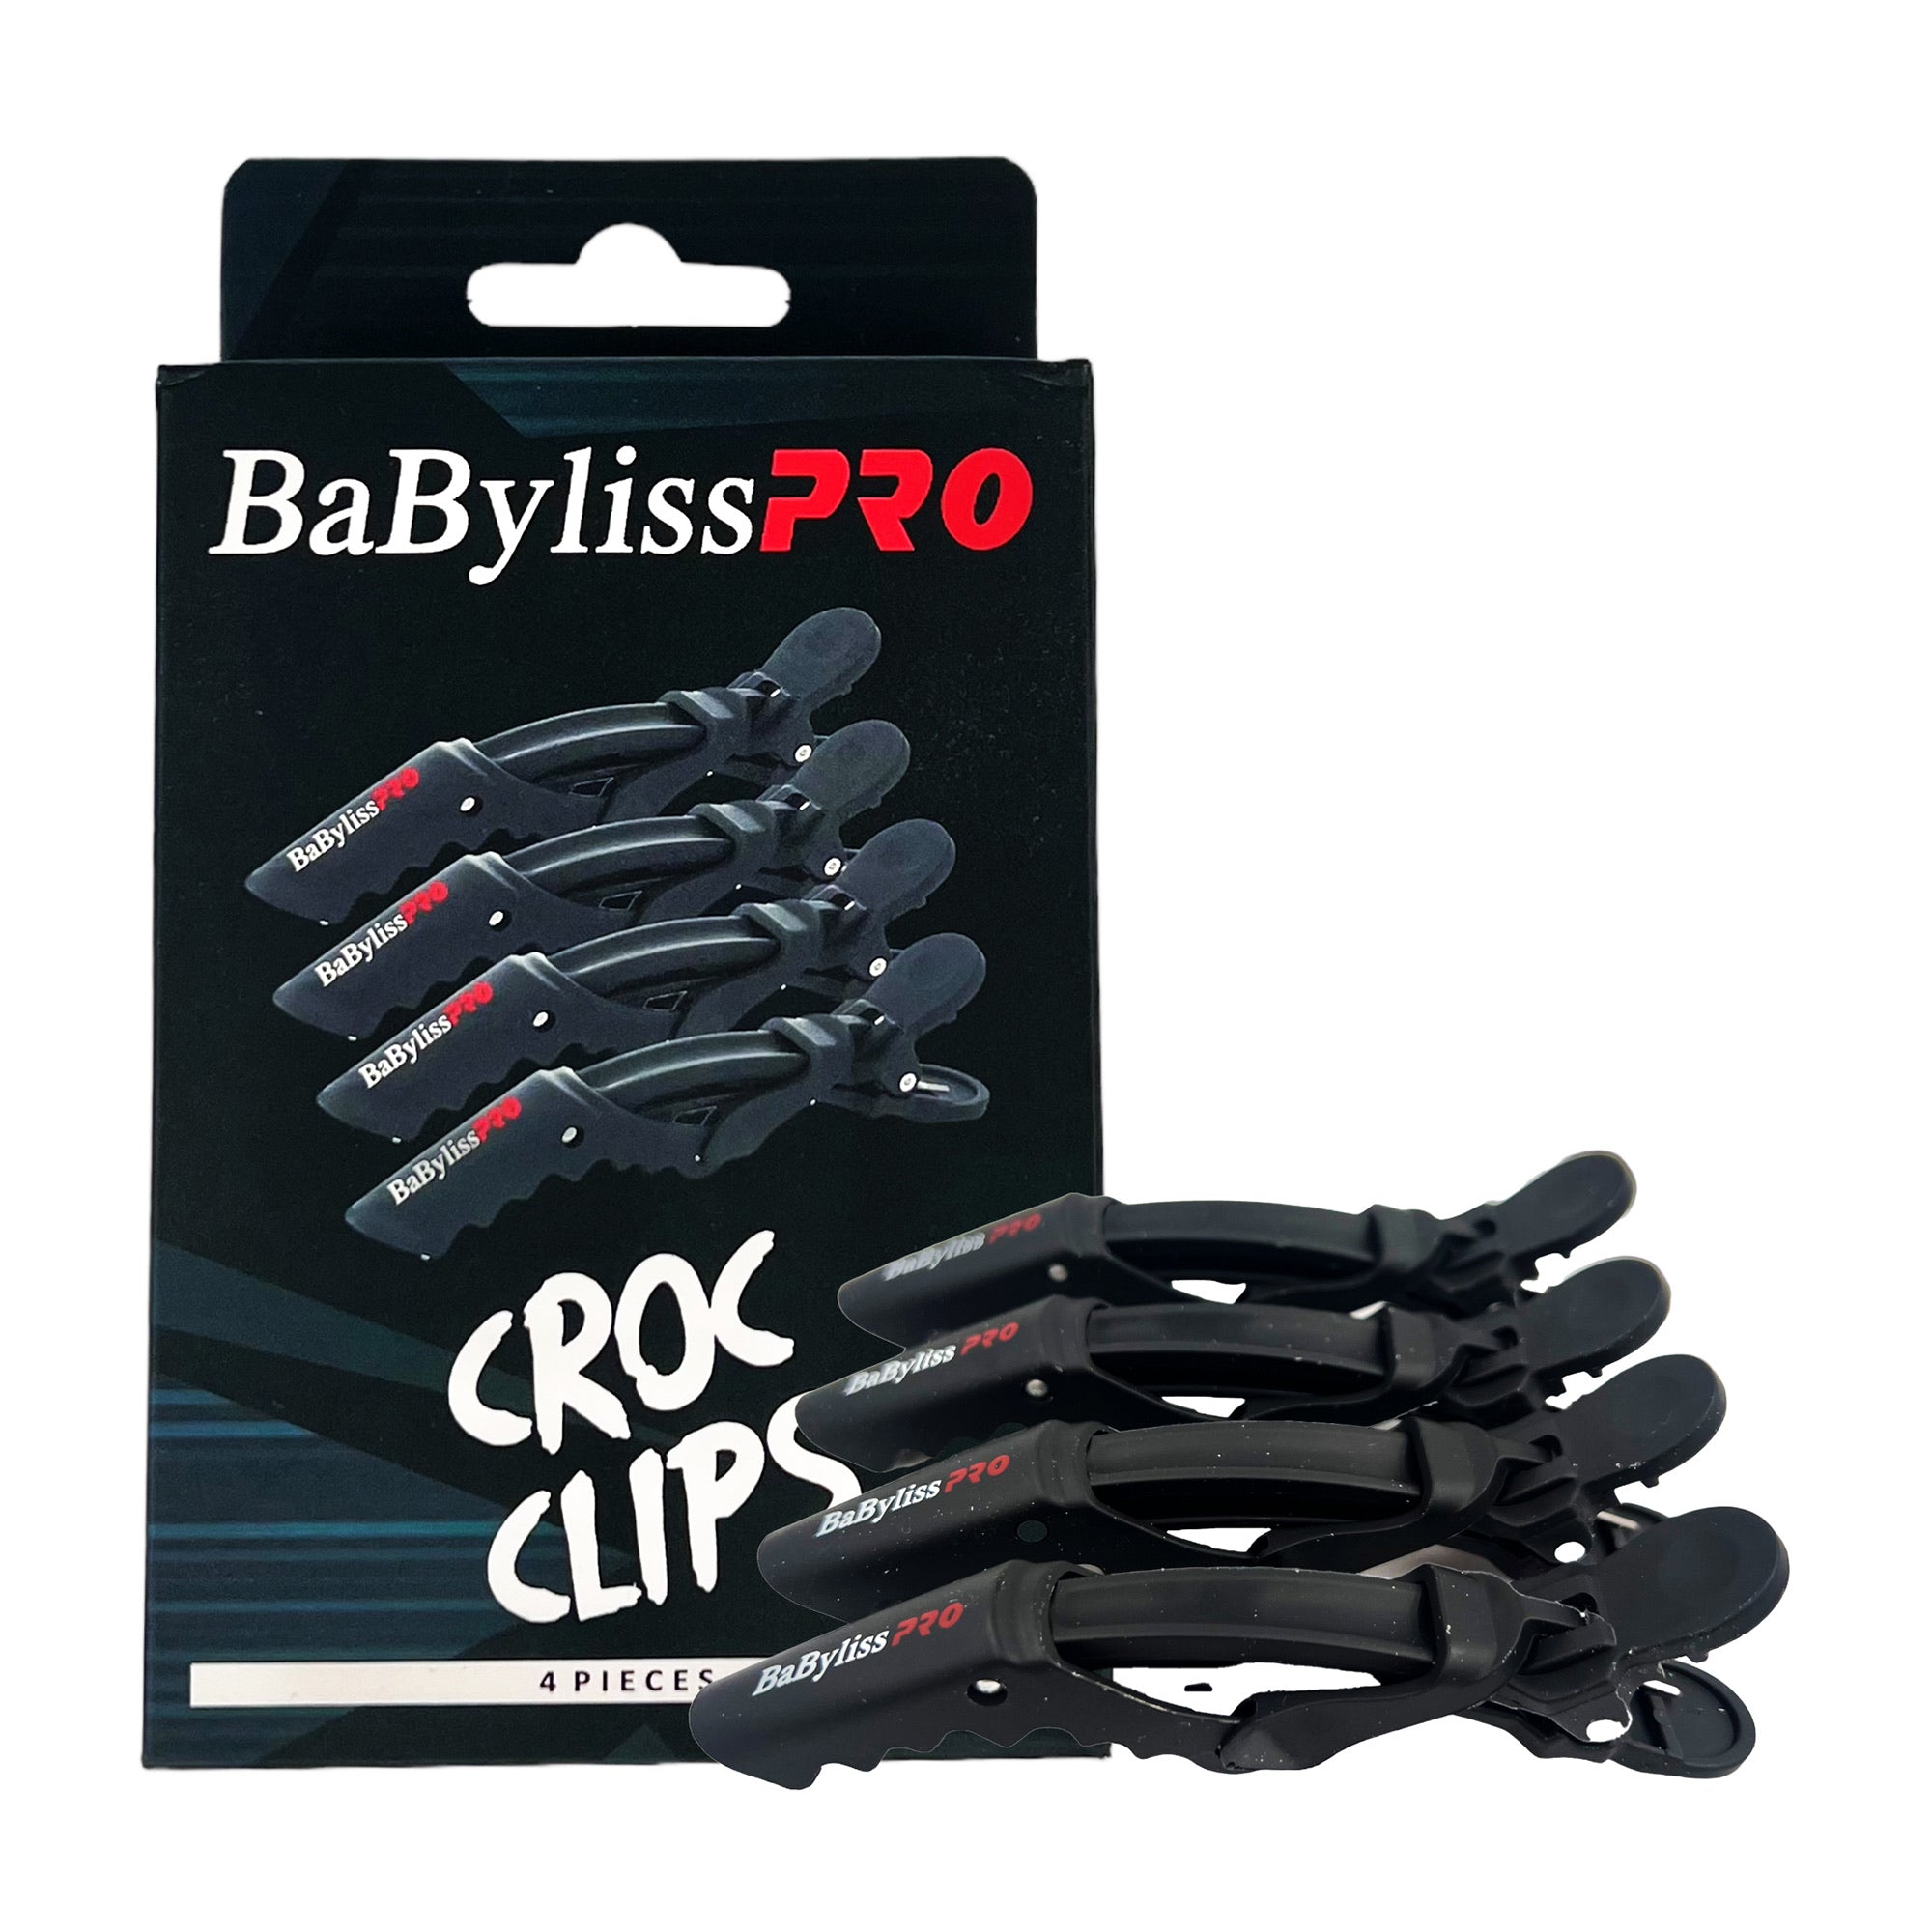 Babyliss Pro - Croc Clips 6pcs